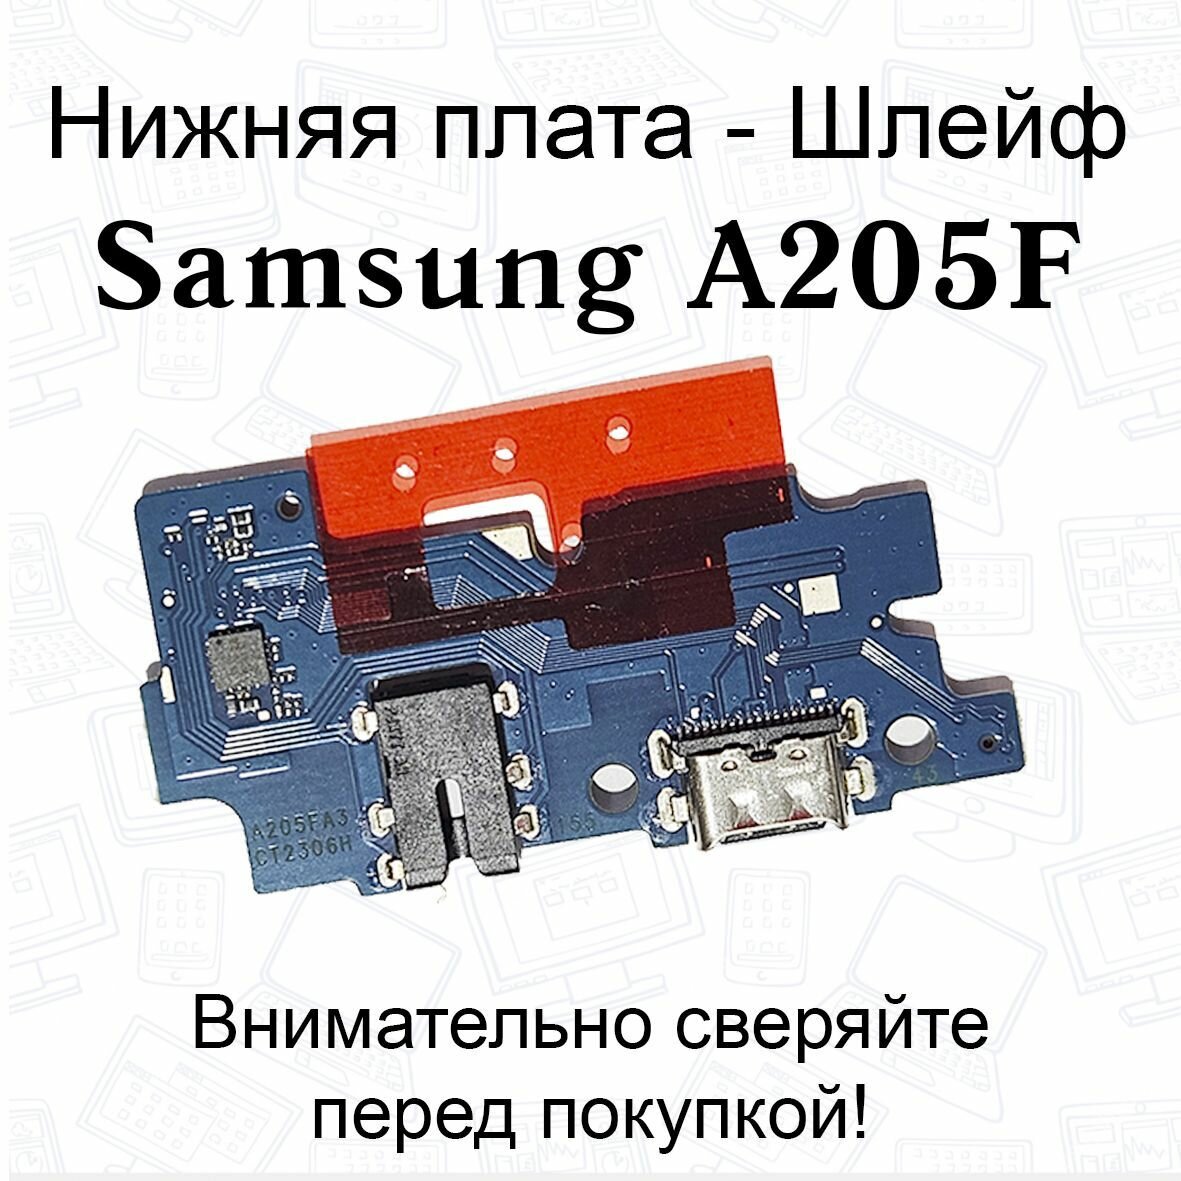 Нижняя плата/шлейфдля Samsung Galaxy A20 (A205F) системный разъем/разъем гарнитуры/микрофон OEM